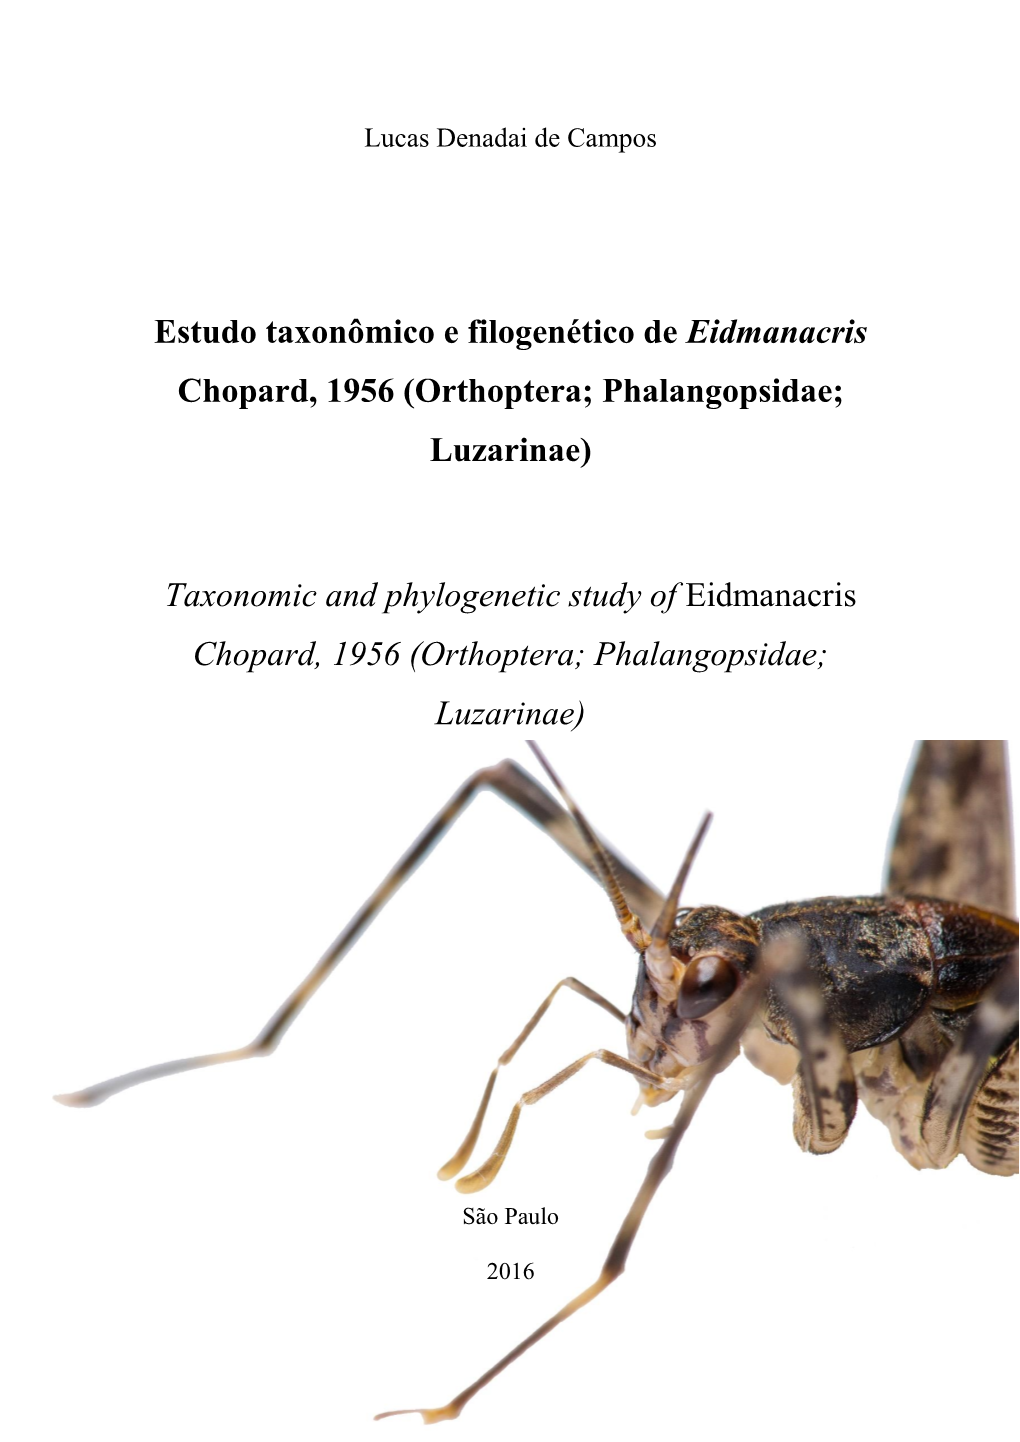 Orthoptera; Phalangopsidae; Luzarinae)